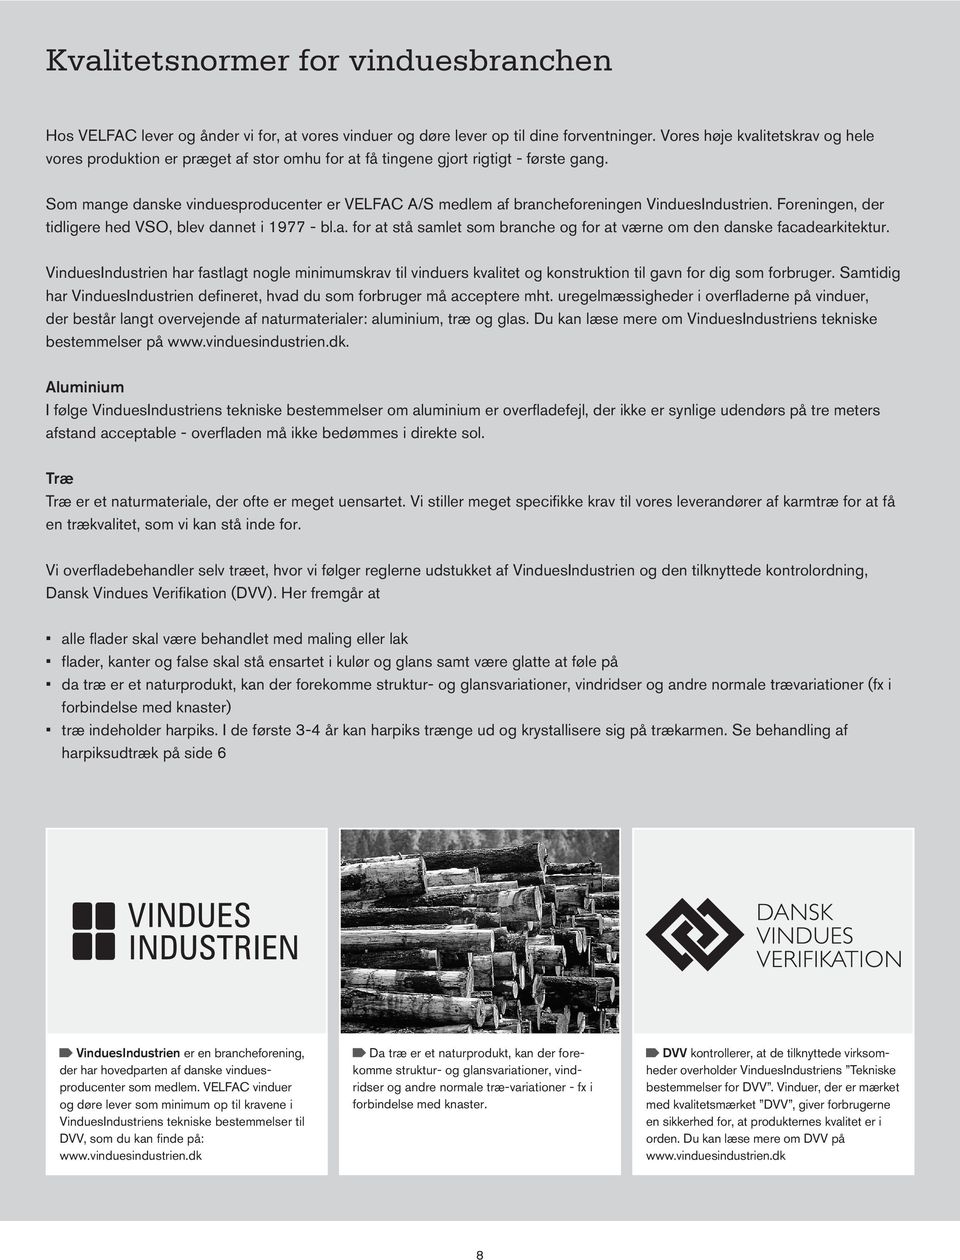 Som mange danske vinduesproducenter er VELFAC A/S medlem af brancheforeningen VinduesIndustrien. Foreningen, der tidligere hed VSO, blev dannet i 1977 - bl.a. for at stå samlet som branche og for at værne om den danske facadearkitektur.